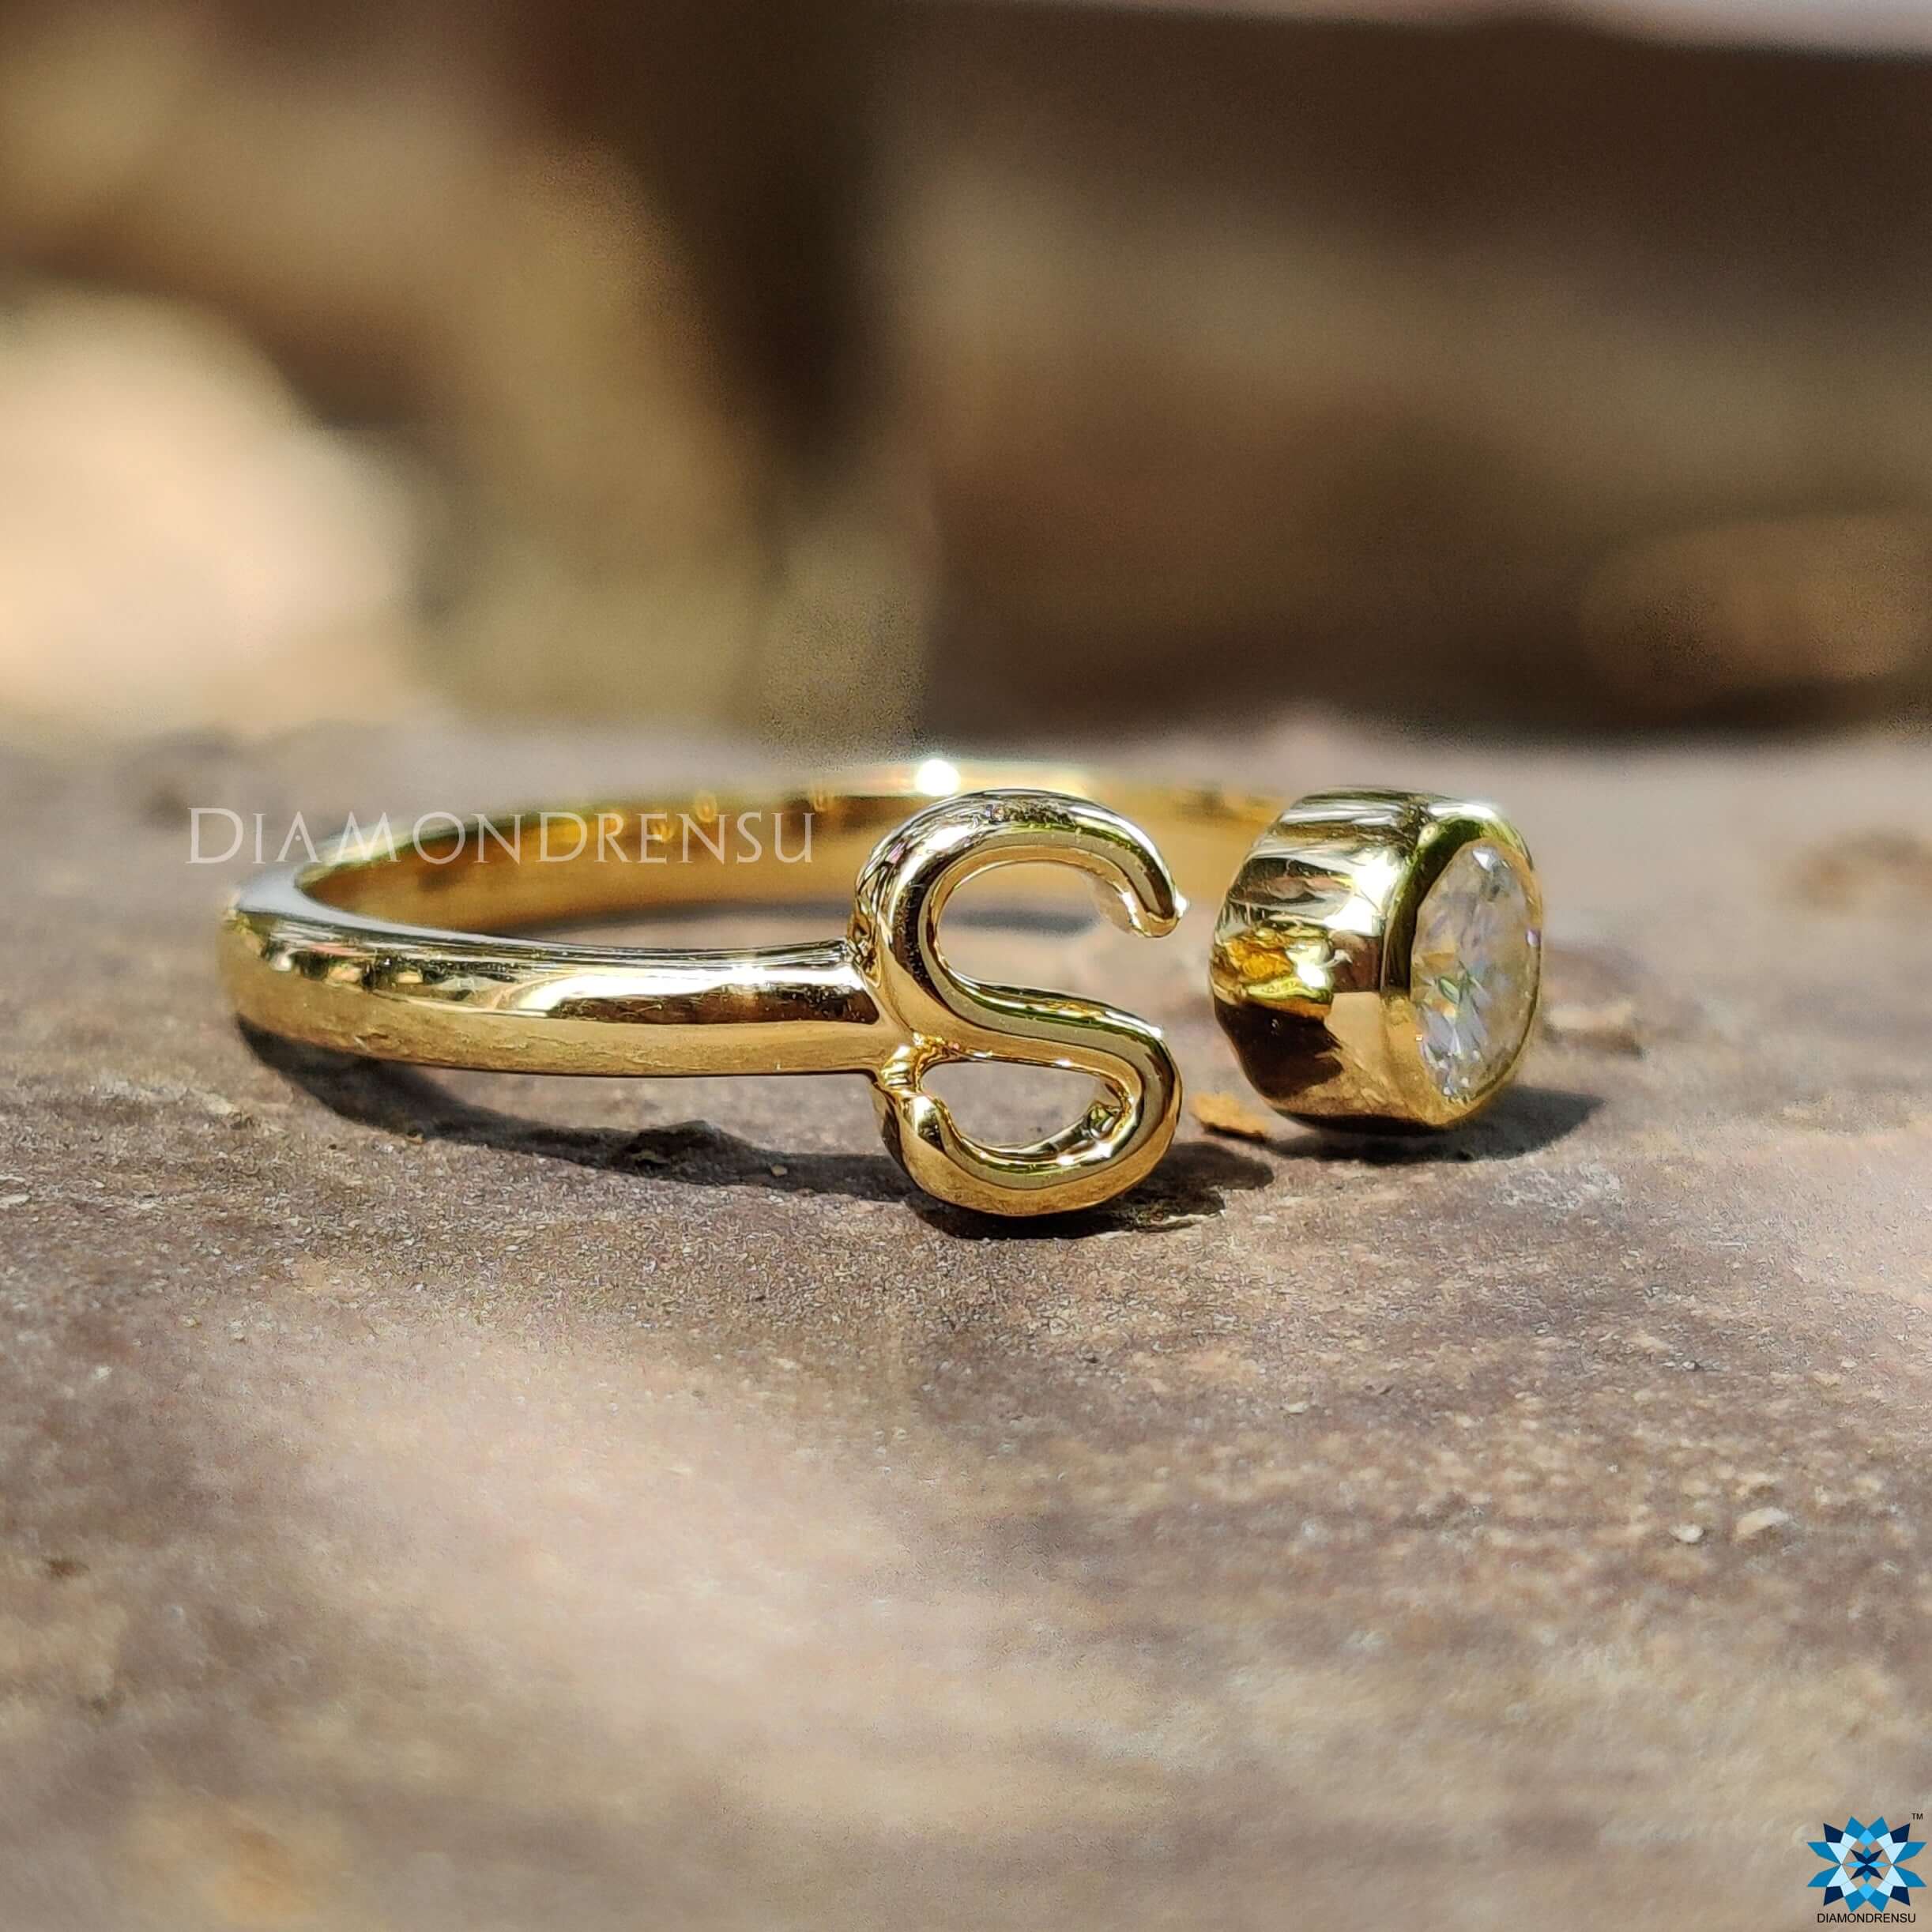 Buy Modern White Stone Wedding Rose Gold Ring Design for Women